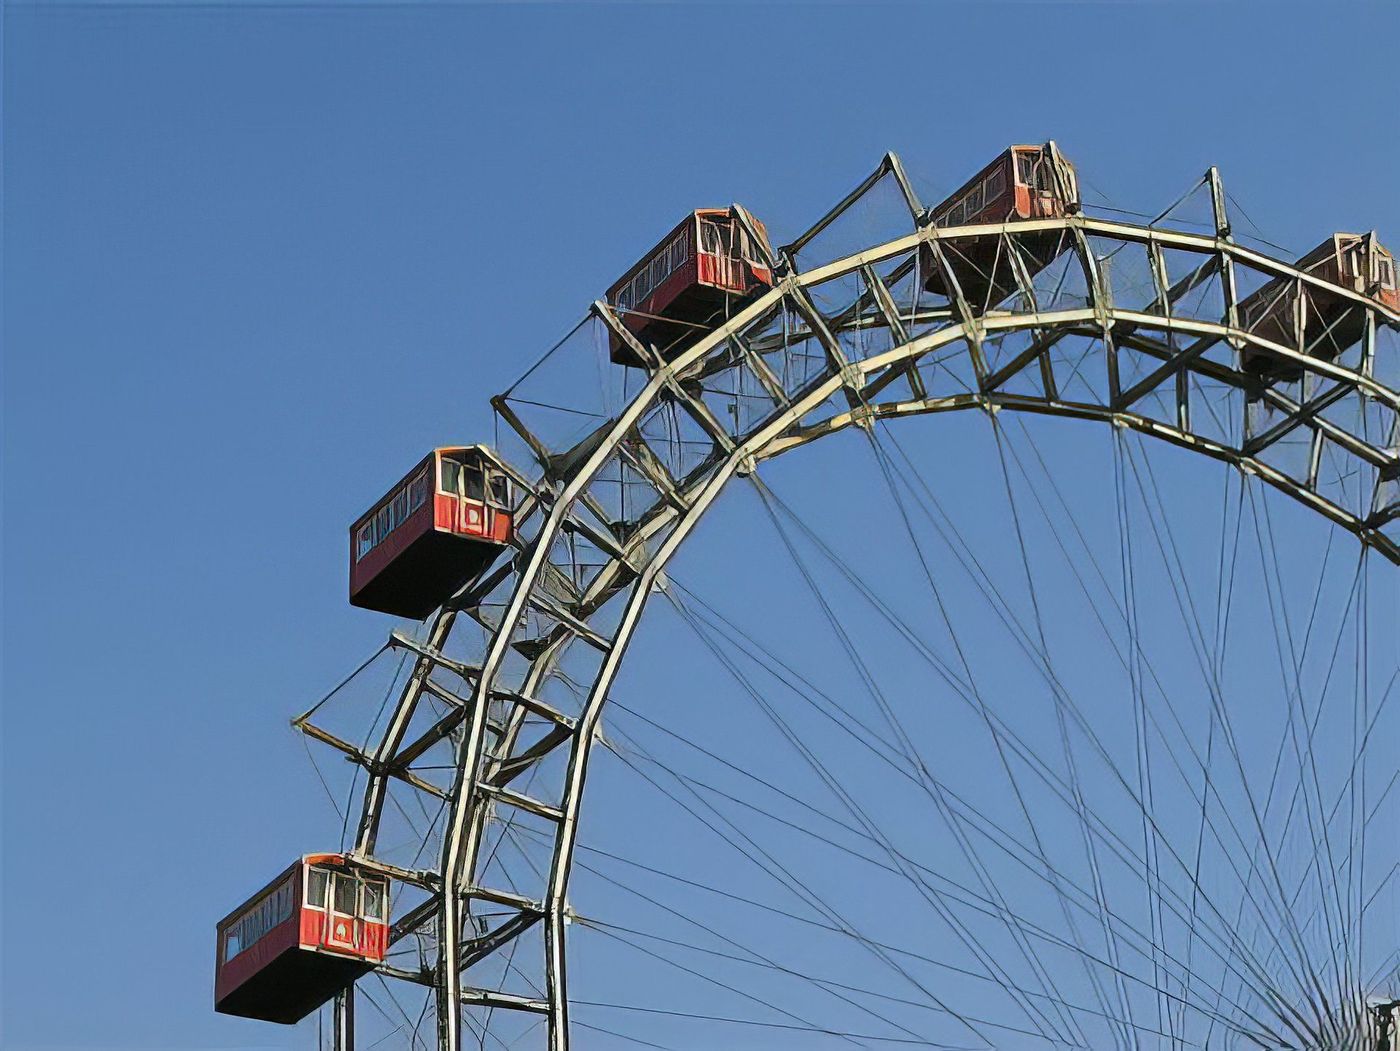 La grande roue de Vienne dans le parc du Prater